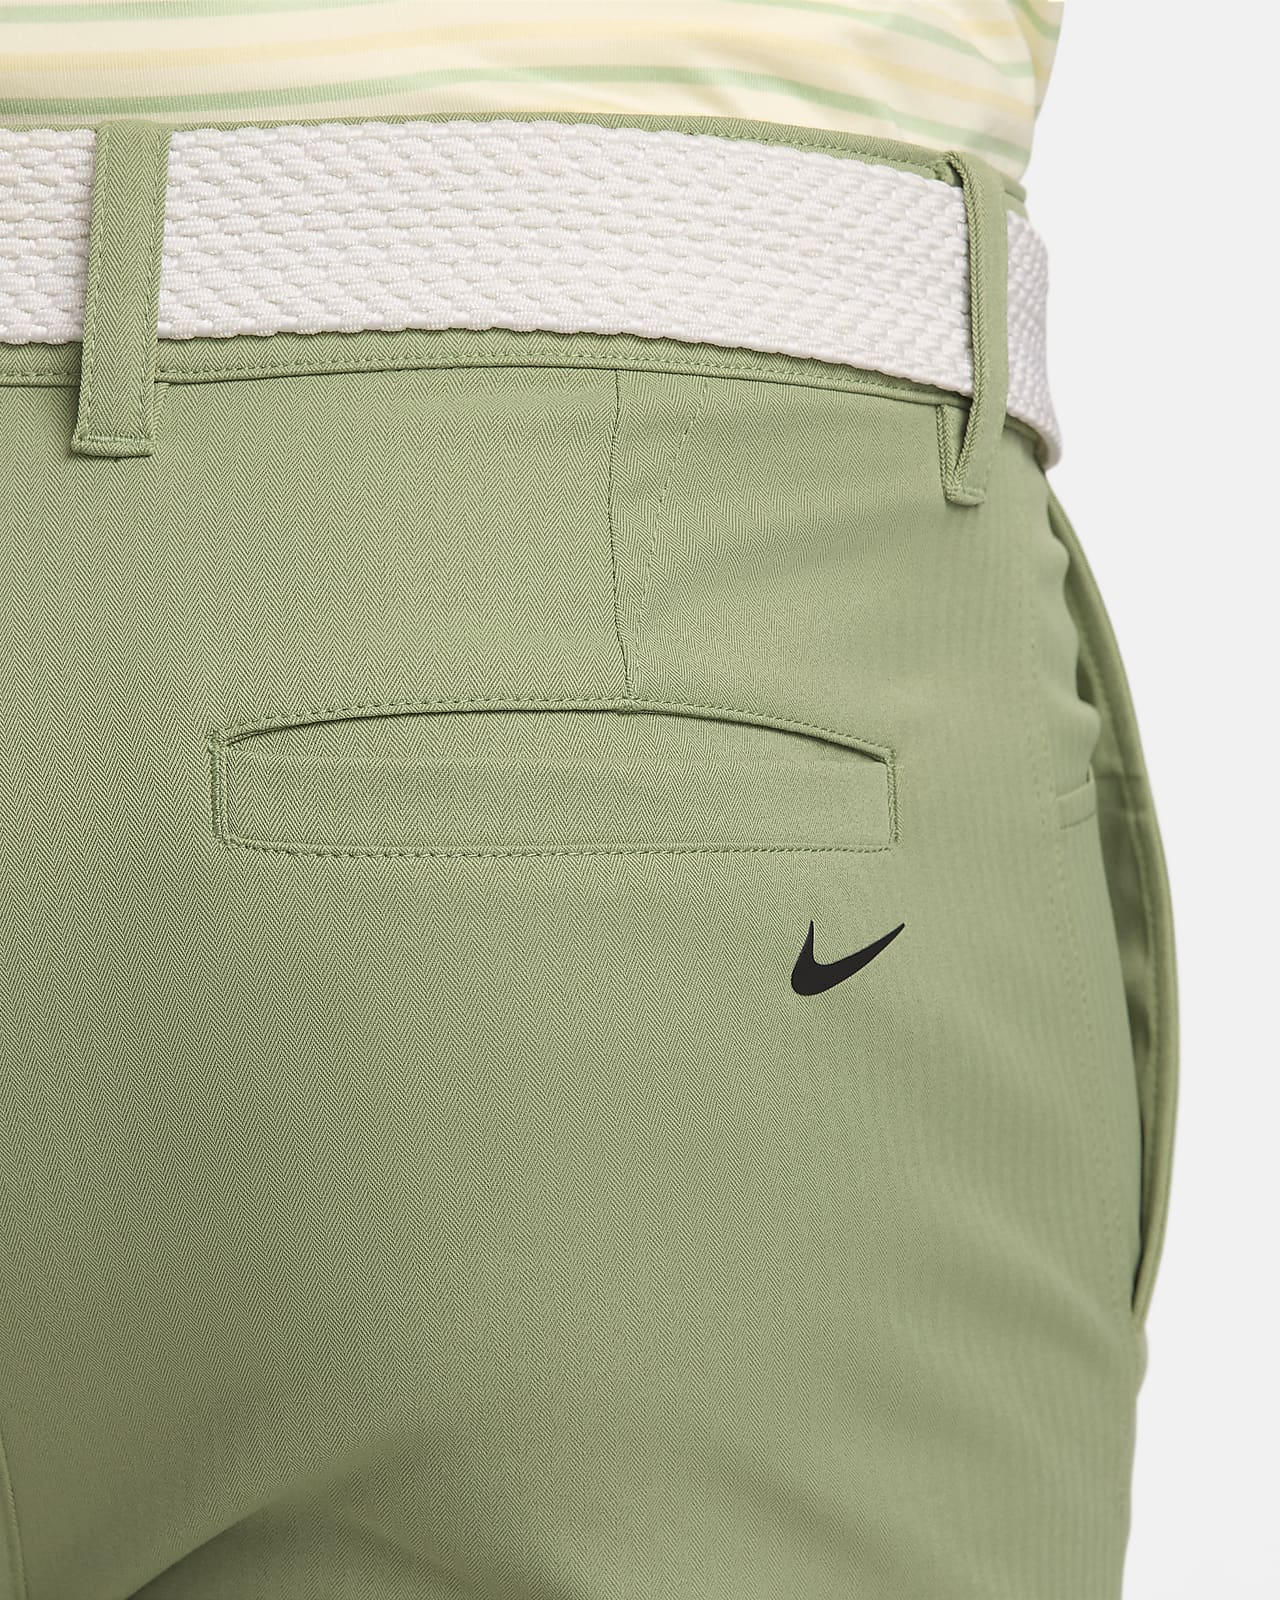 Nike Golf Pants Women's Sz 8 Light Orewood Khaki Flex Jean Golf $95  BV6081-025